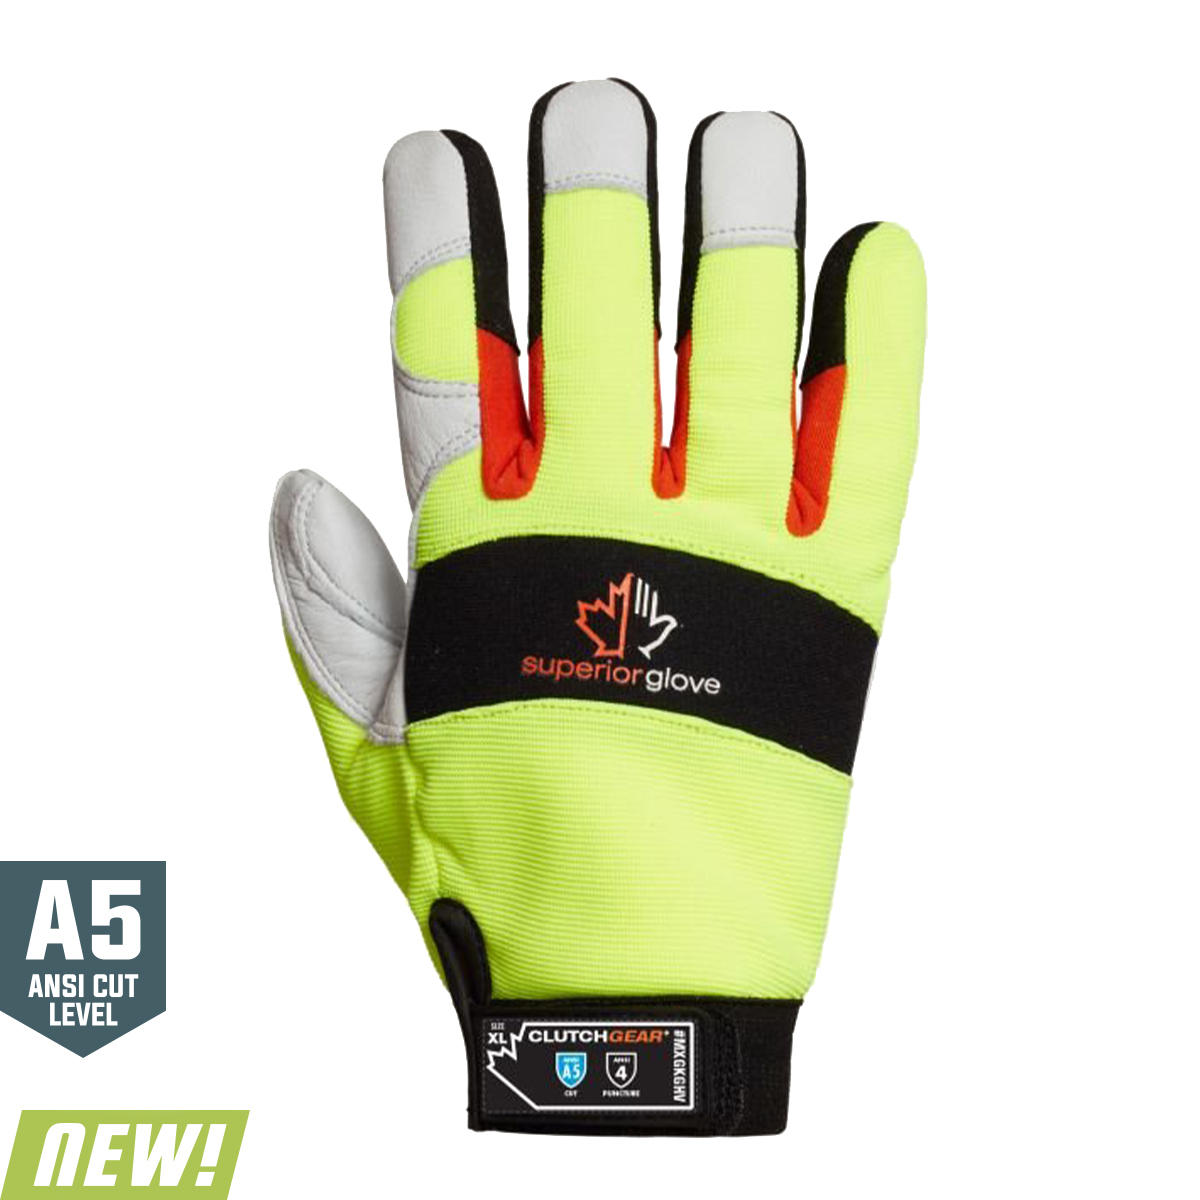 Get Superior Glove Clutch Gear Mechanics Gloves